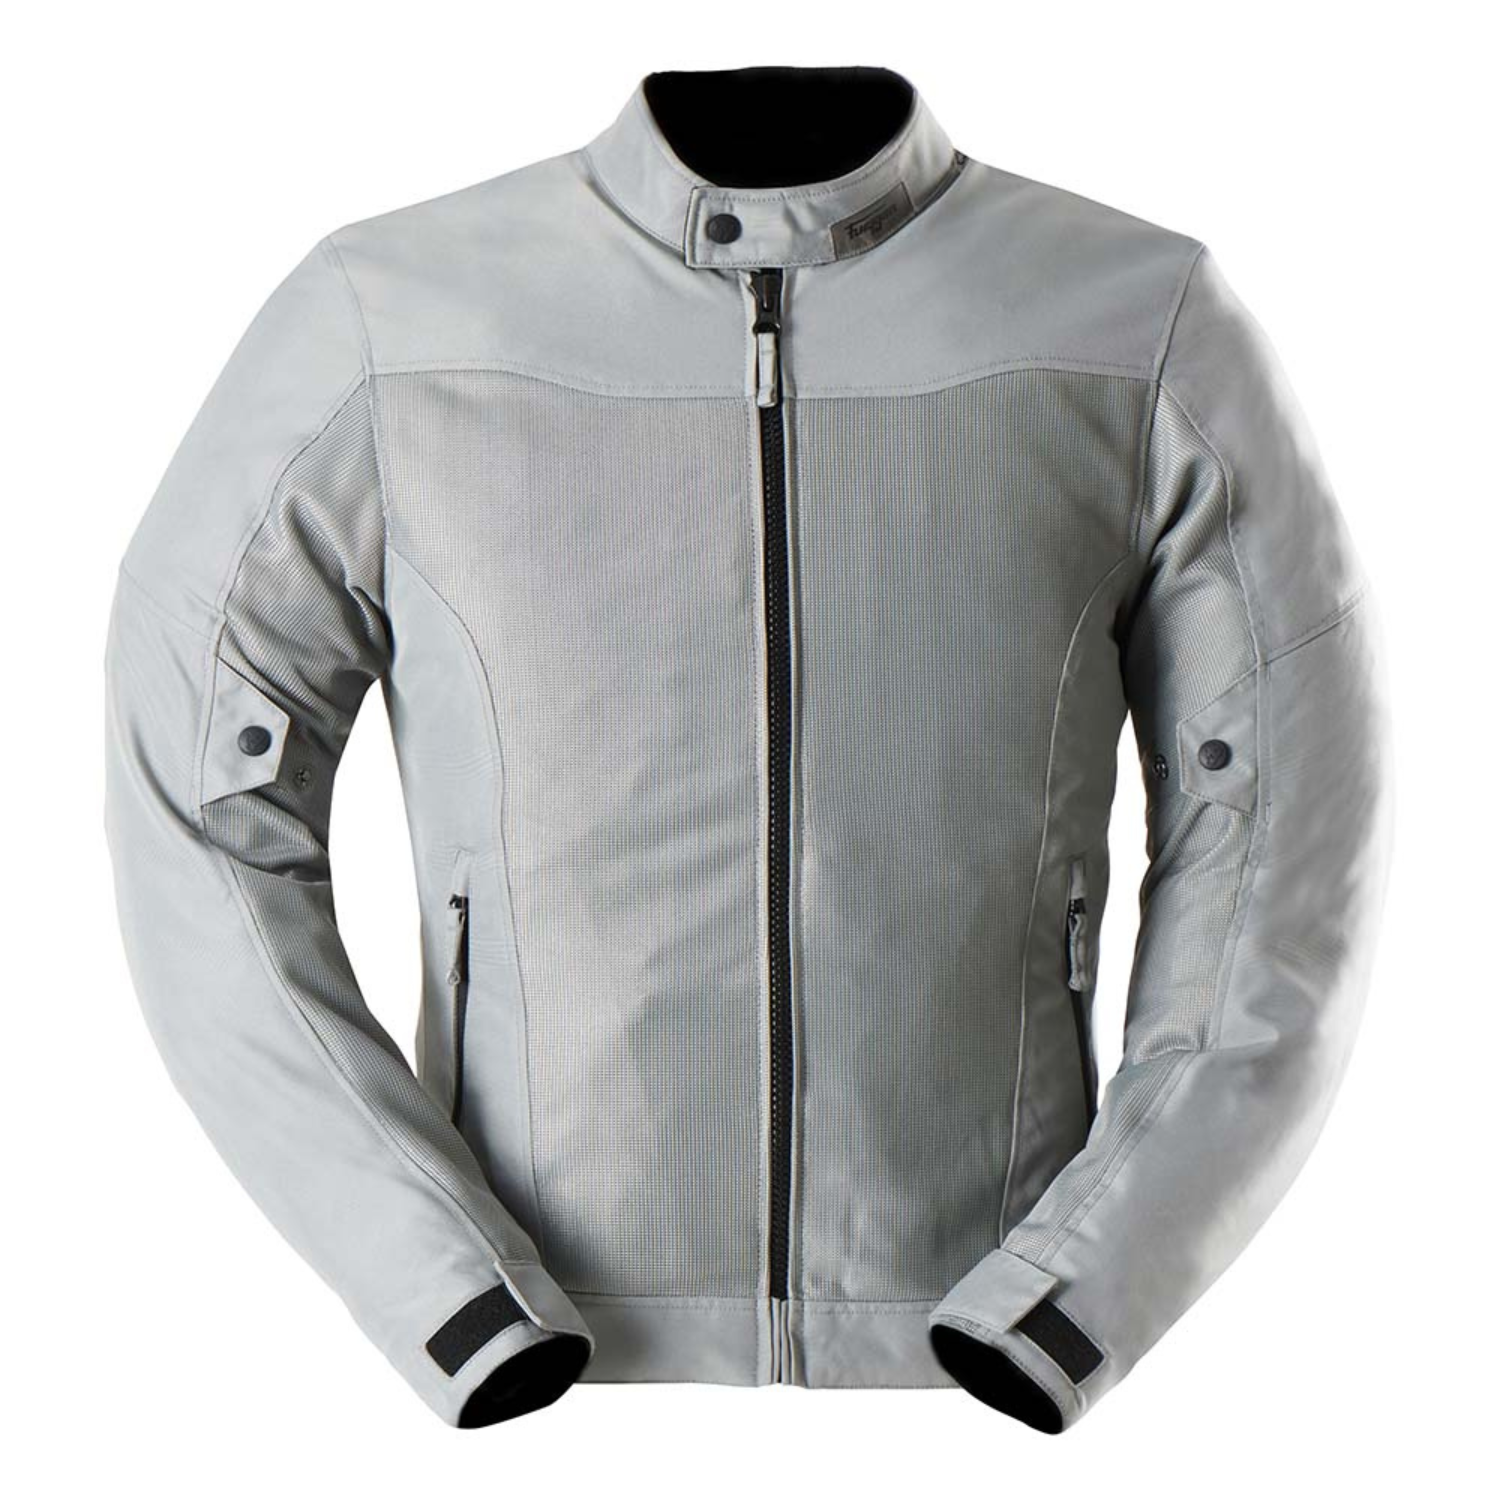 Image of Furygan Mistral Evo 3 Jacket Grey Talla XL